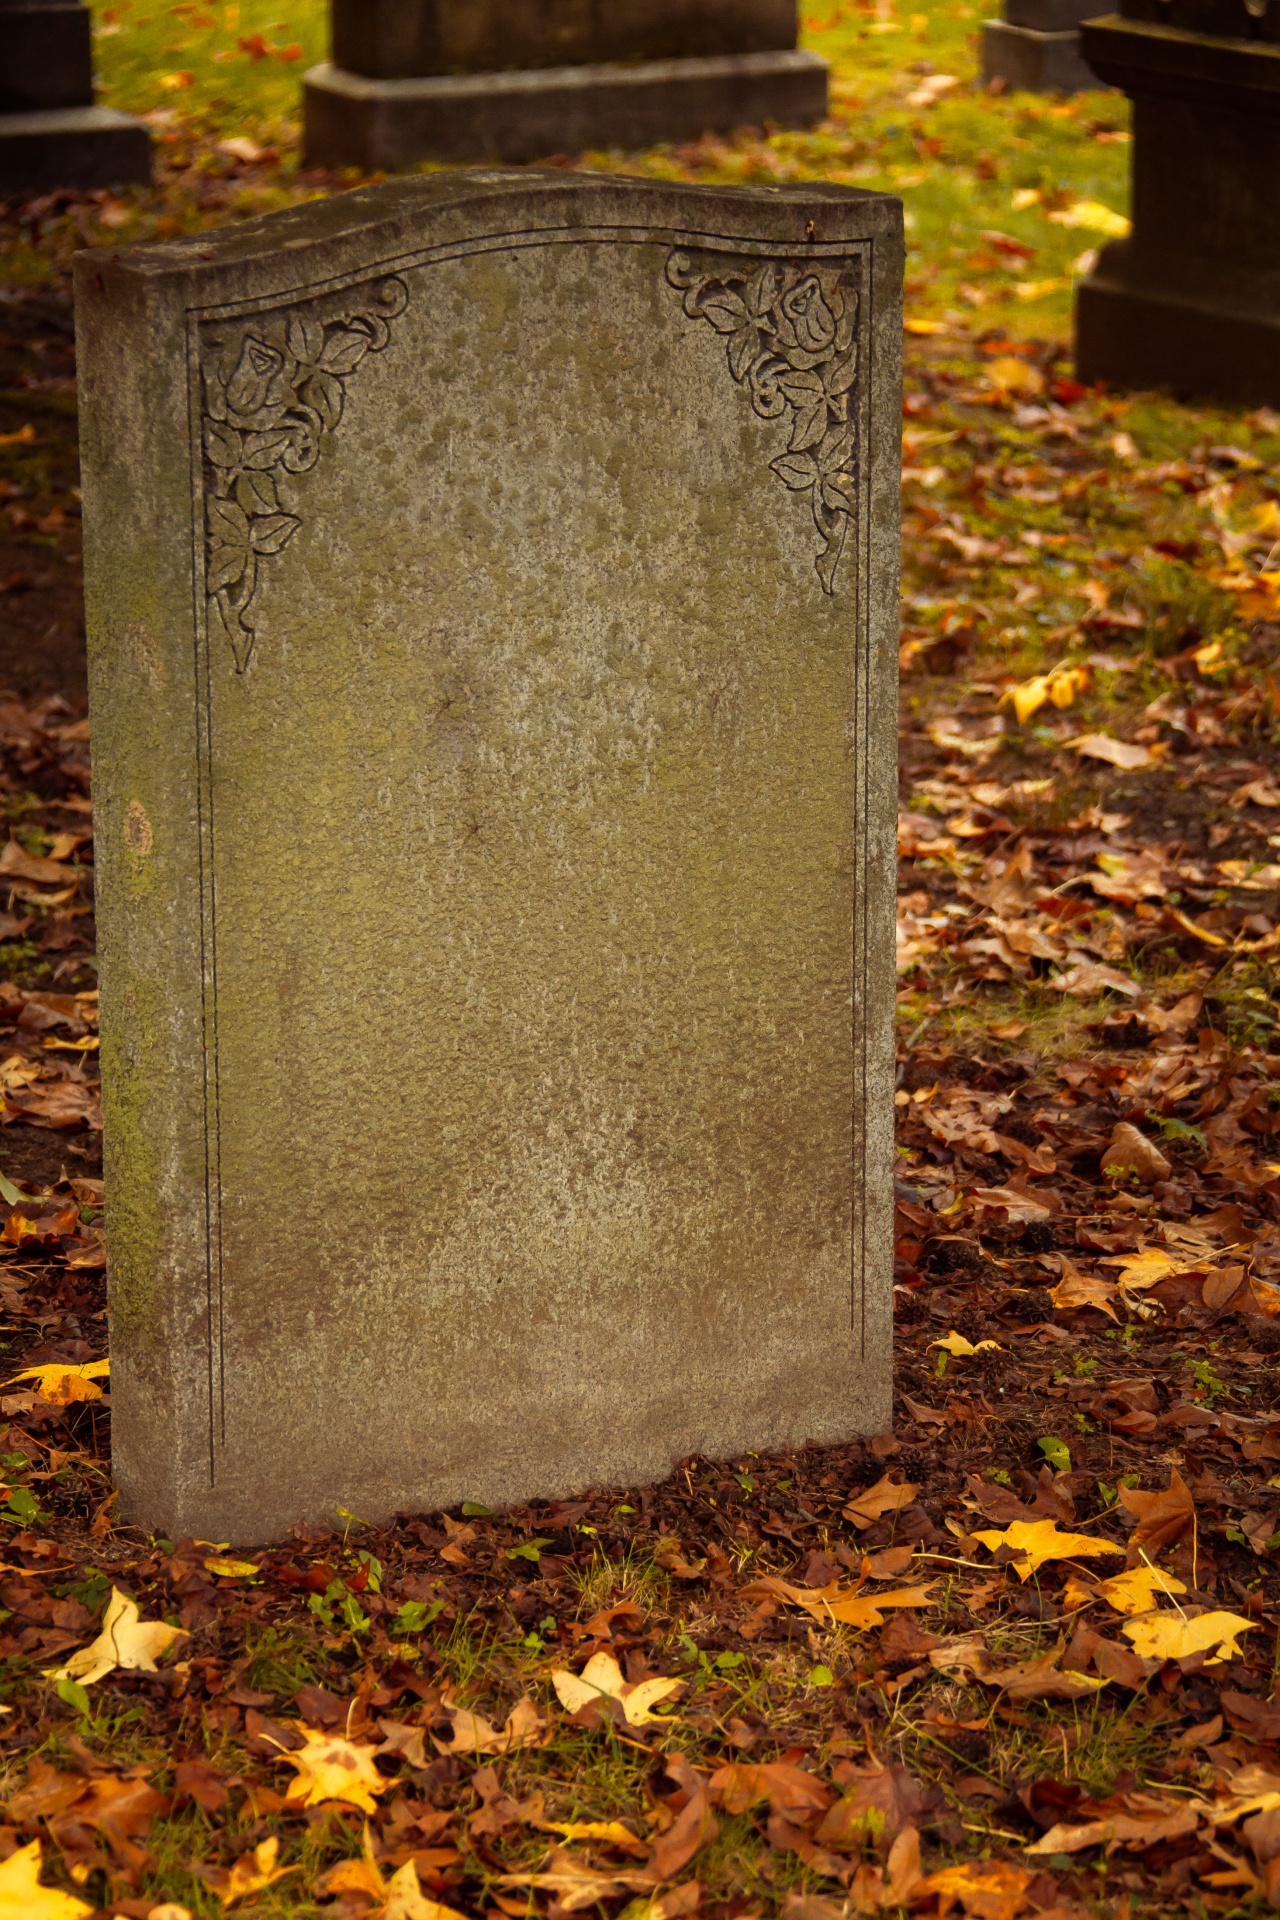 Blank Headstone